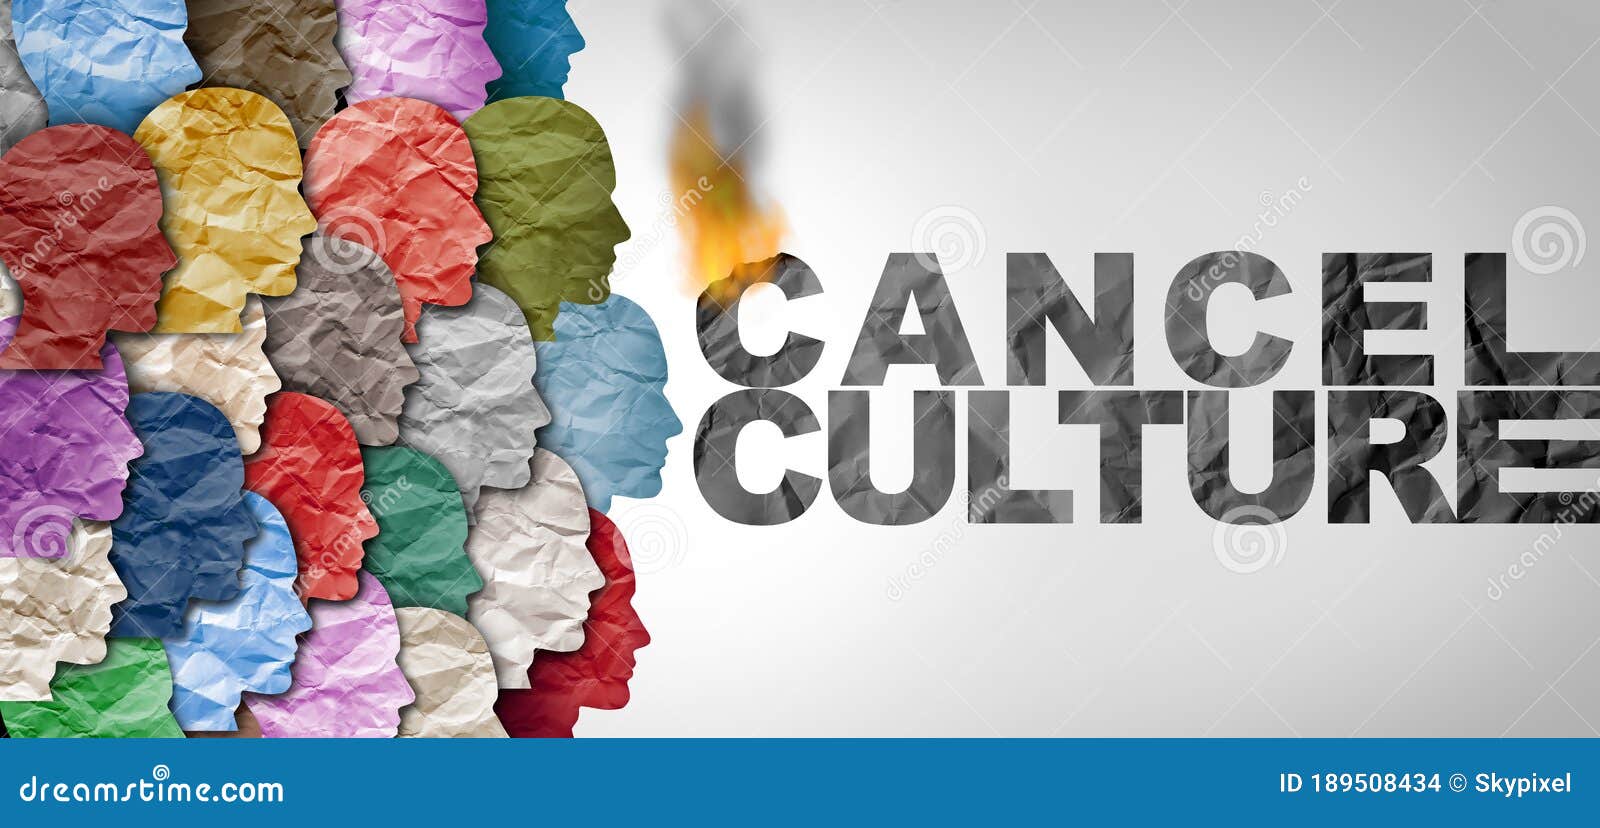 cancel culture idea